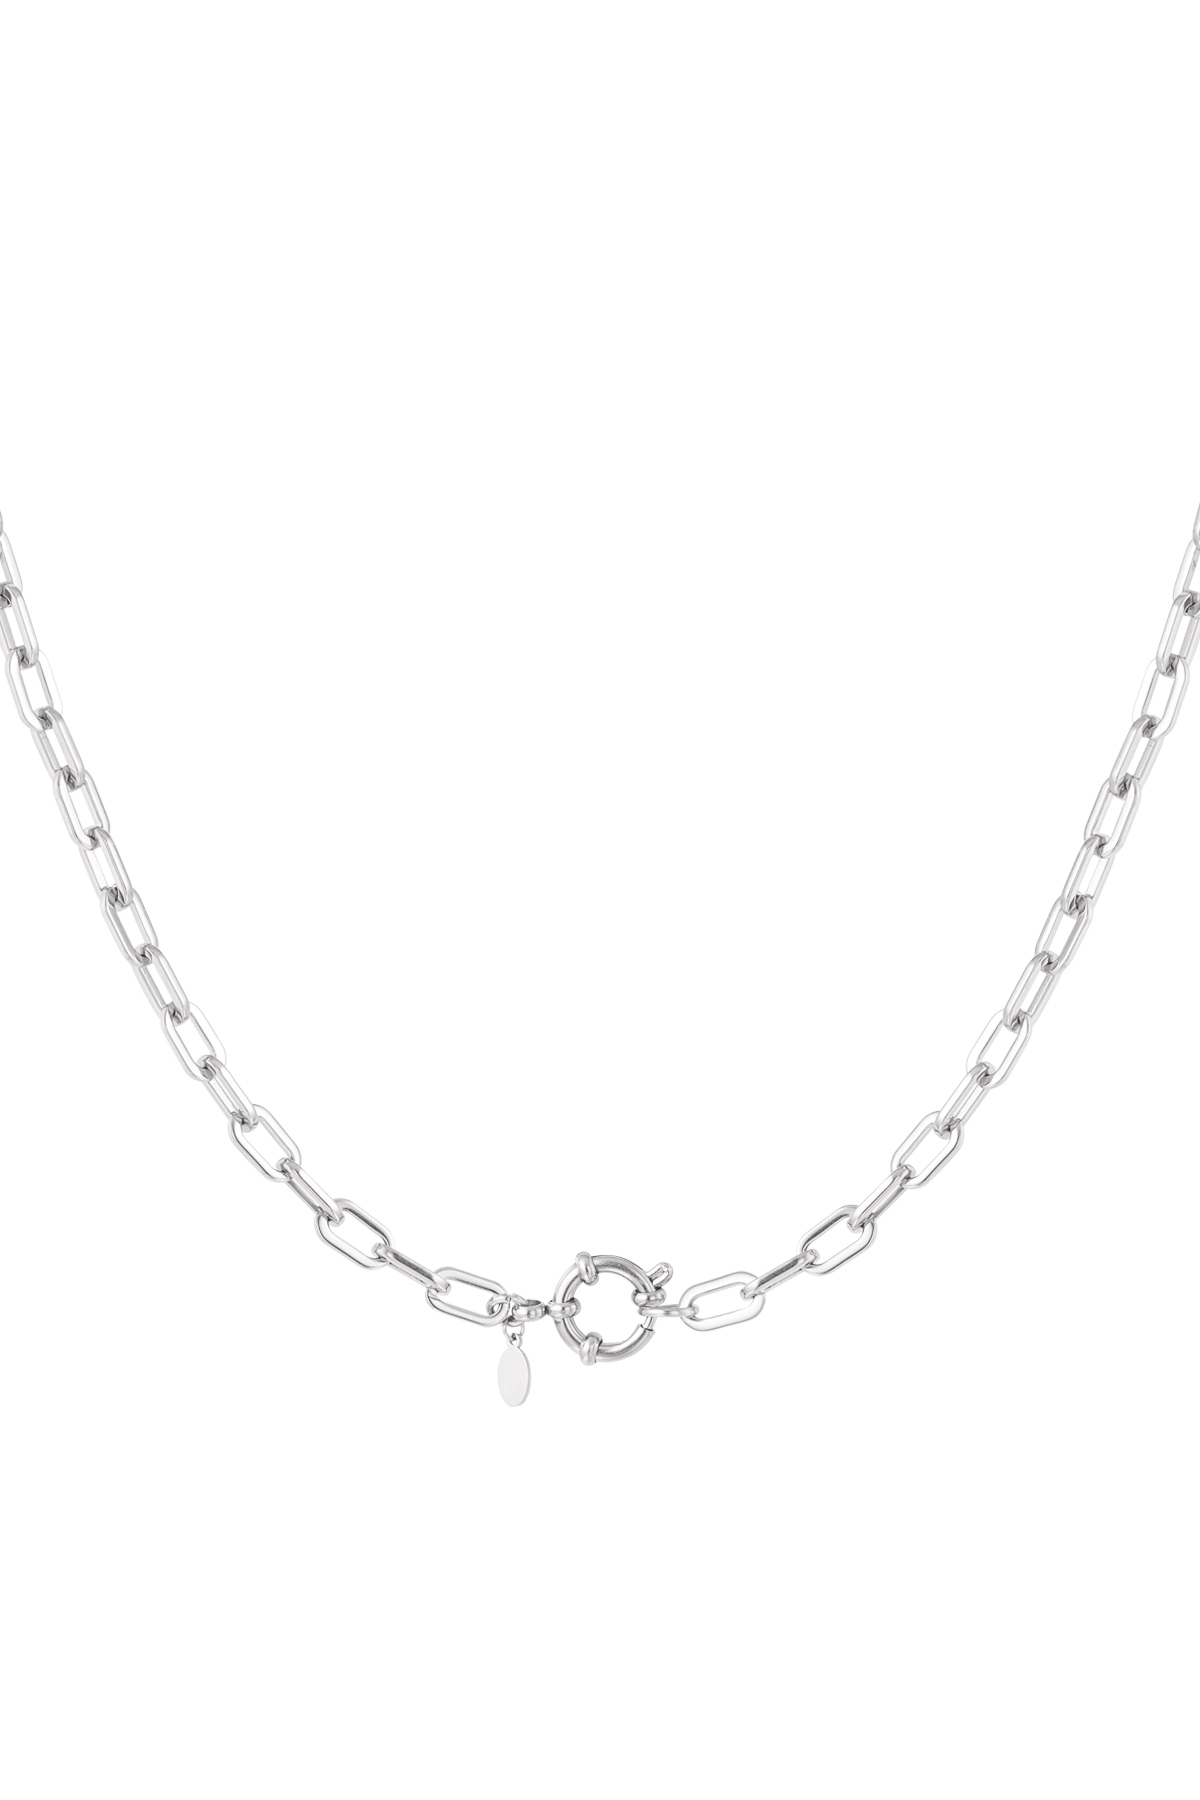 Halskette mit einfachen Gliedern und rundem Verschluss – Silber 